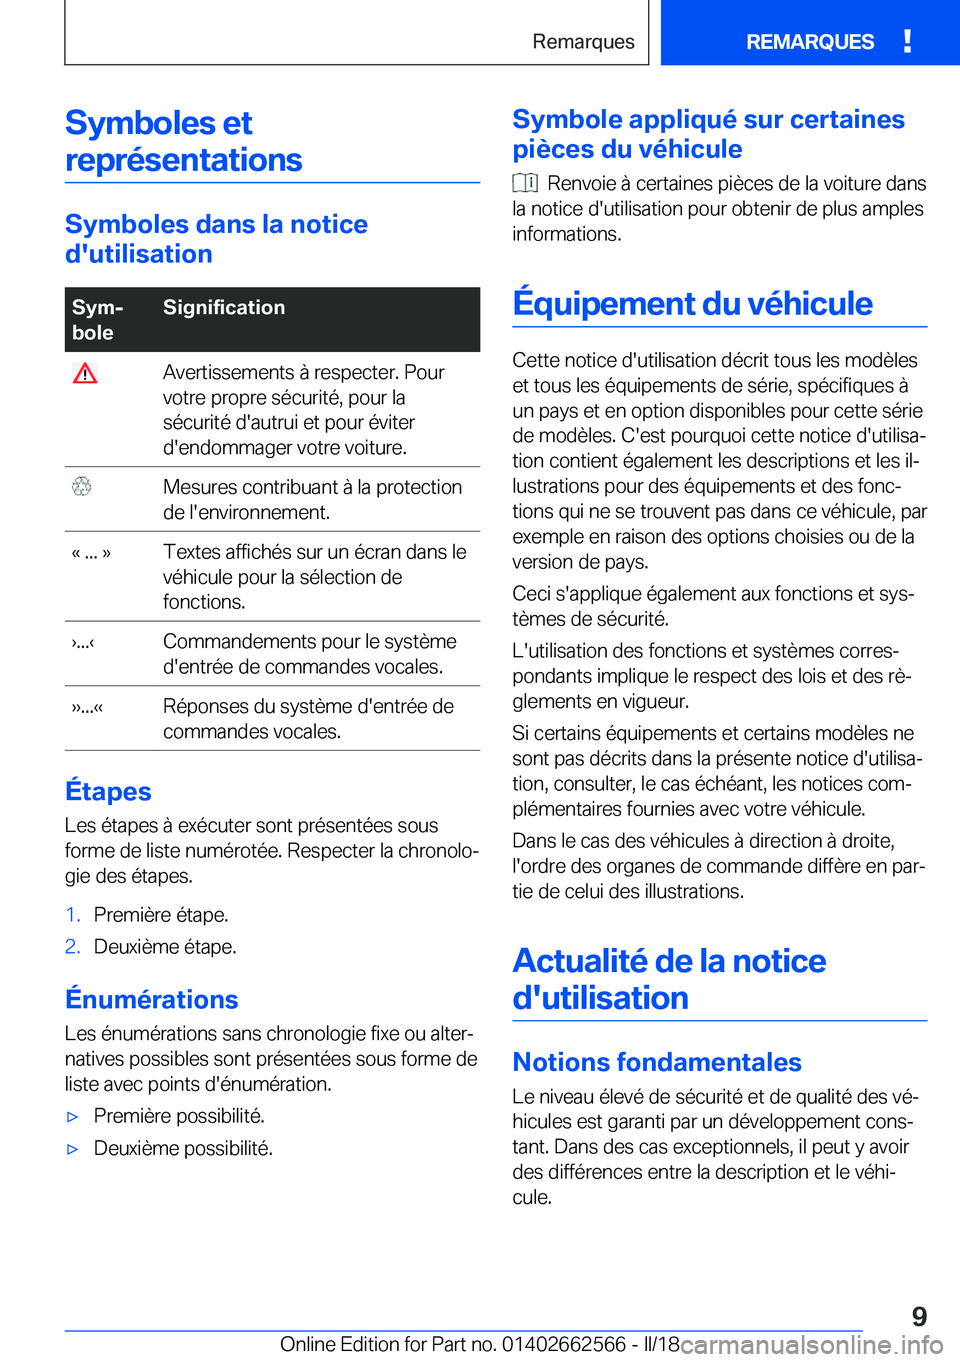 BMW M2 2018  Notices Demploi (in French) �S�y�m�b�o�l�e�s��e�t�r�e�p�r�é�s�e�n�t�a�t�i�o�n�s
�S�y�m�b�o�l�e�s��d�a�n�s��l�a��n�o�t�i�c�e
�d�'�u�t�i�l�i�s�a�t�i�o�n
�S�y�mj
�b�o�l�e�S�i�g�n�i�f�i�c�a�t�i�o�n� �A�v�e�r�t�i�s�s�e�m�e�